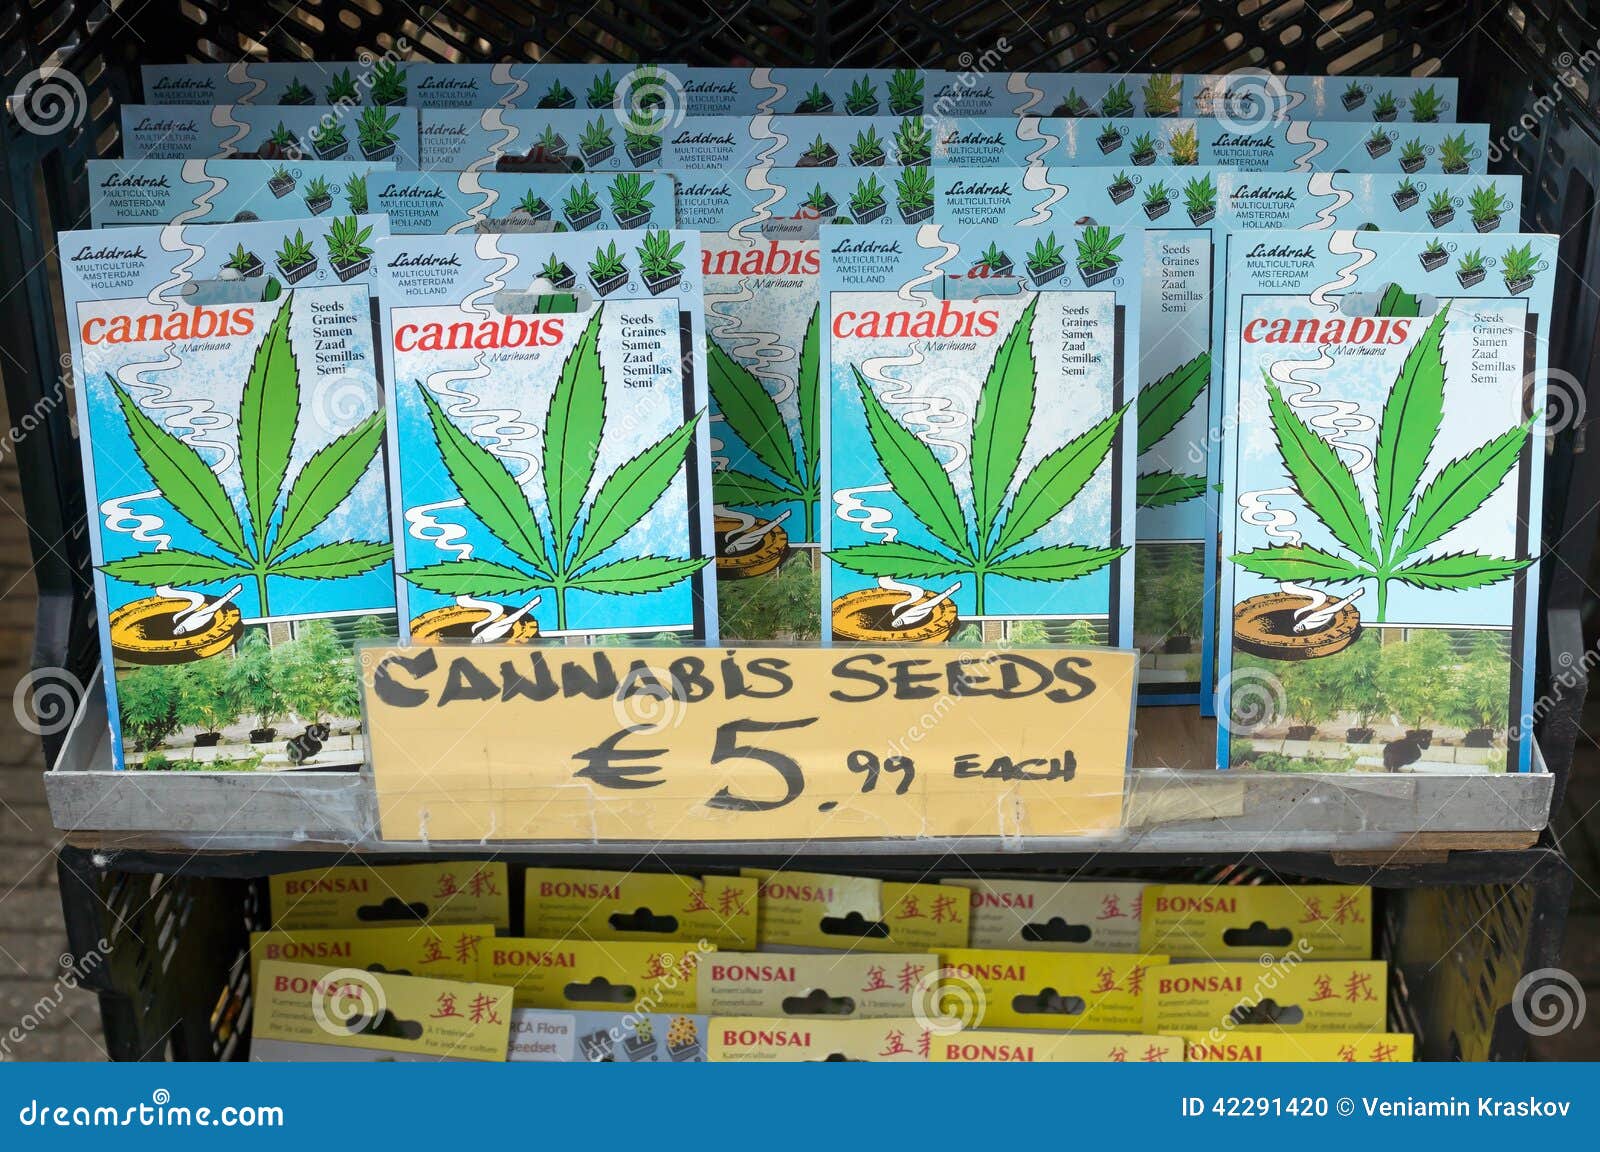 Купить коноплю из амстердама выращивание конопли марихуаны